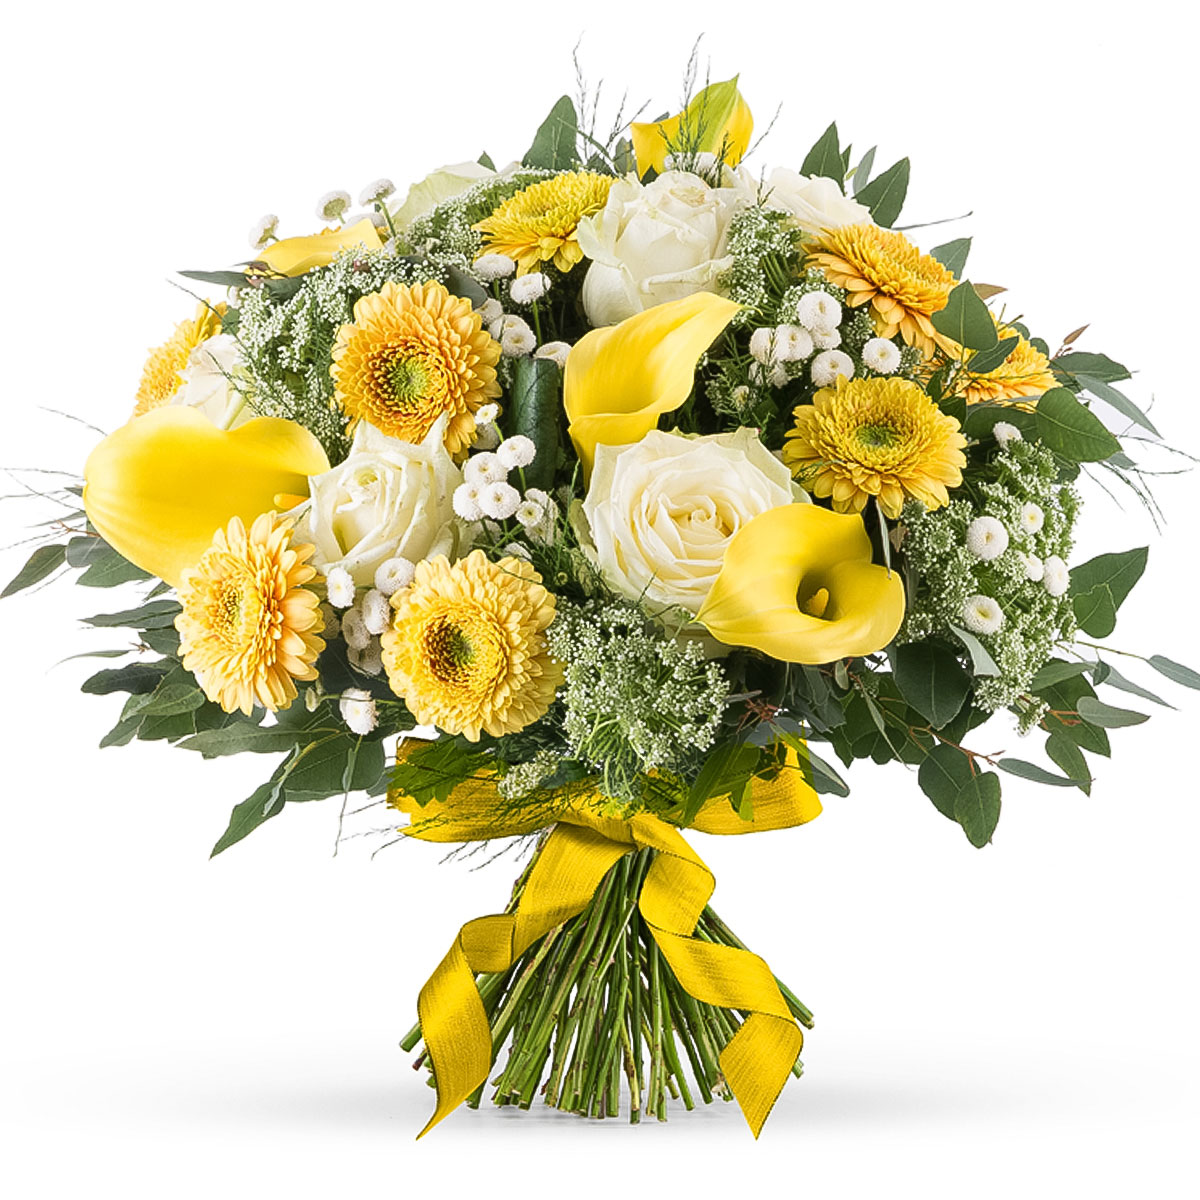 Bouquet Printanier aux Fleurs Blanches et Jaunes - Large (35 cm) Cadeau -  Gift.be